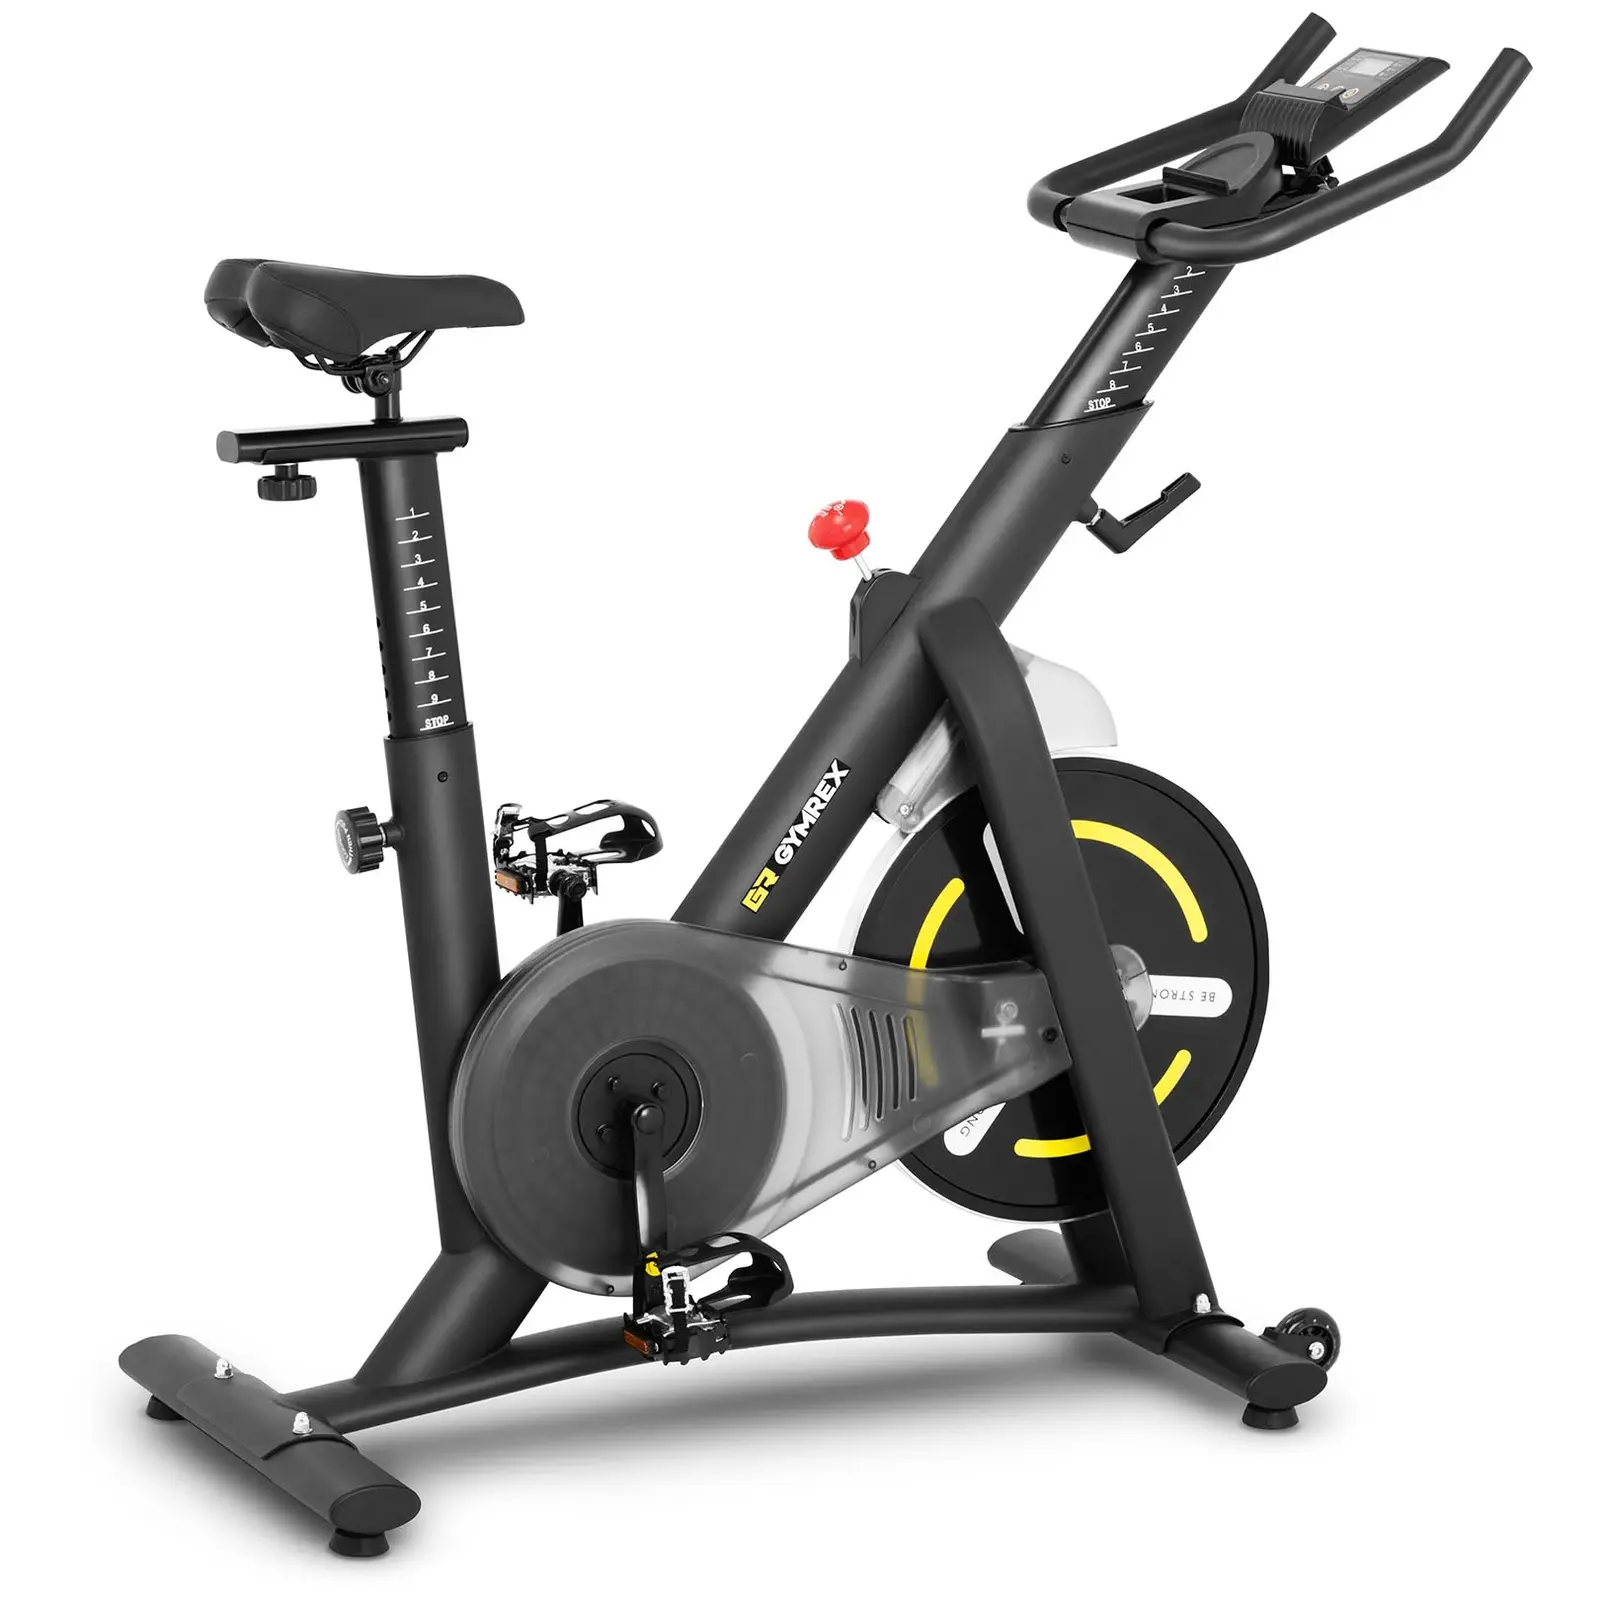 Motionscykel - pedalbelastning 13 kg - LCD